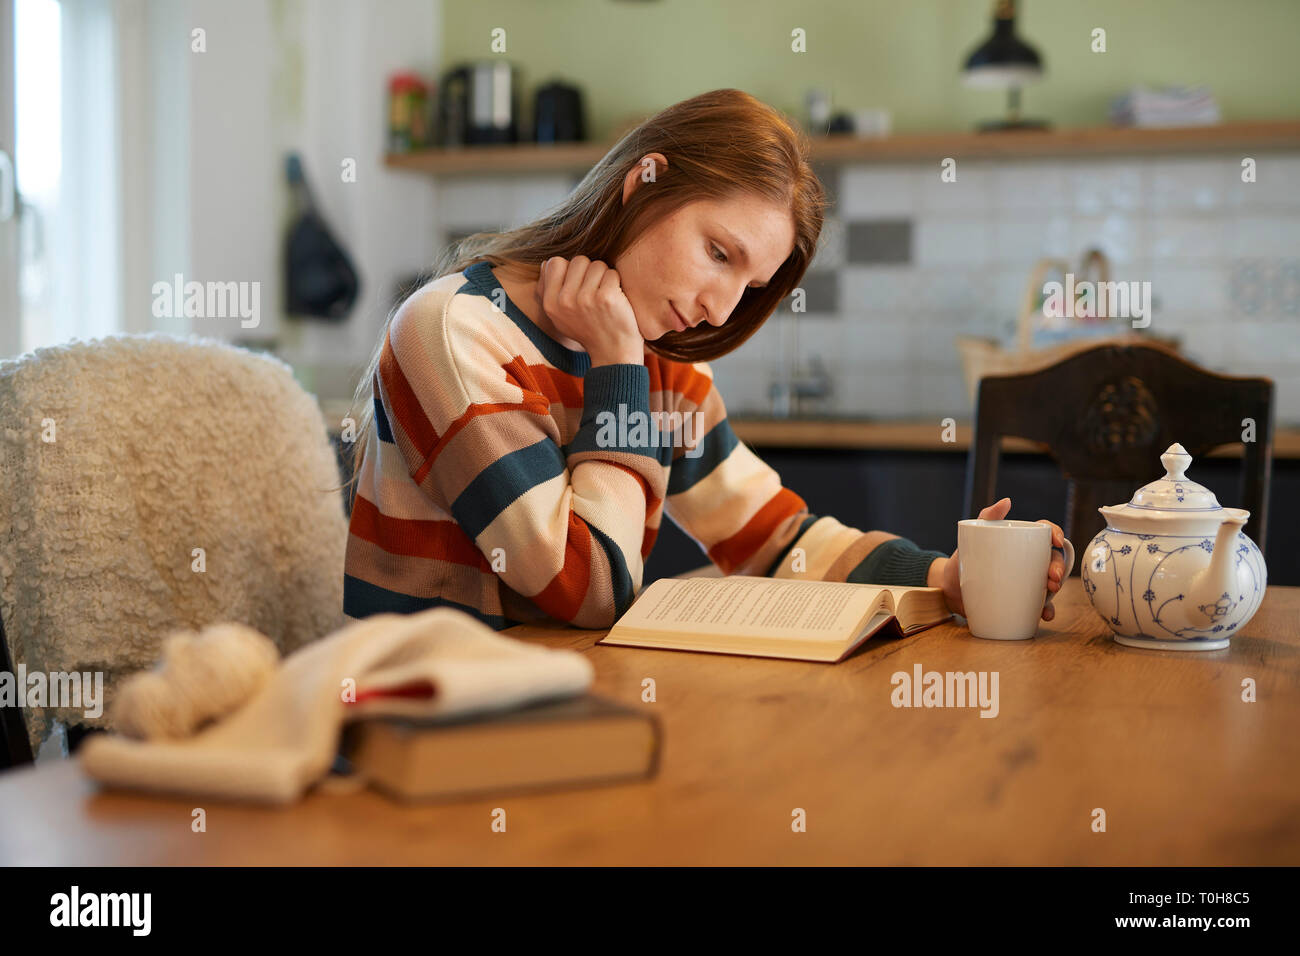 Bella donna bionda seduti ad un tavolo la lettura di un libro, sorridente, uncinetto gli utensili e i libri sul tavolo Foto Stock